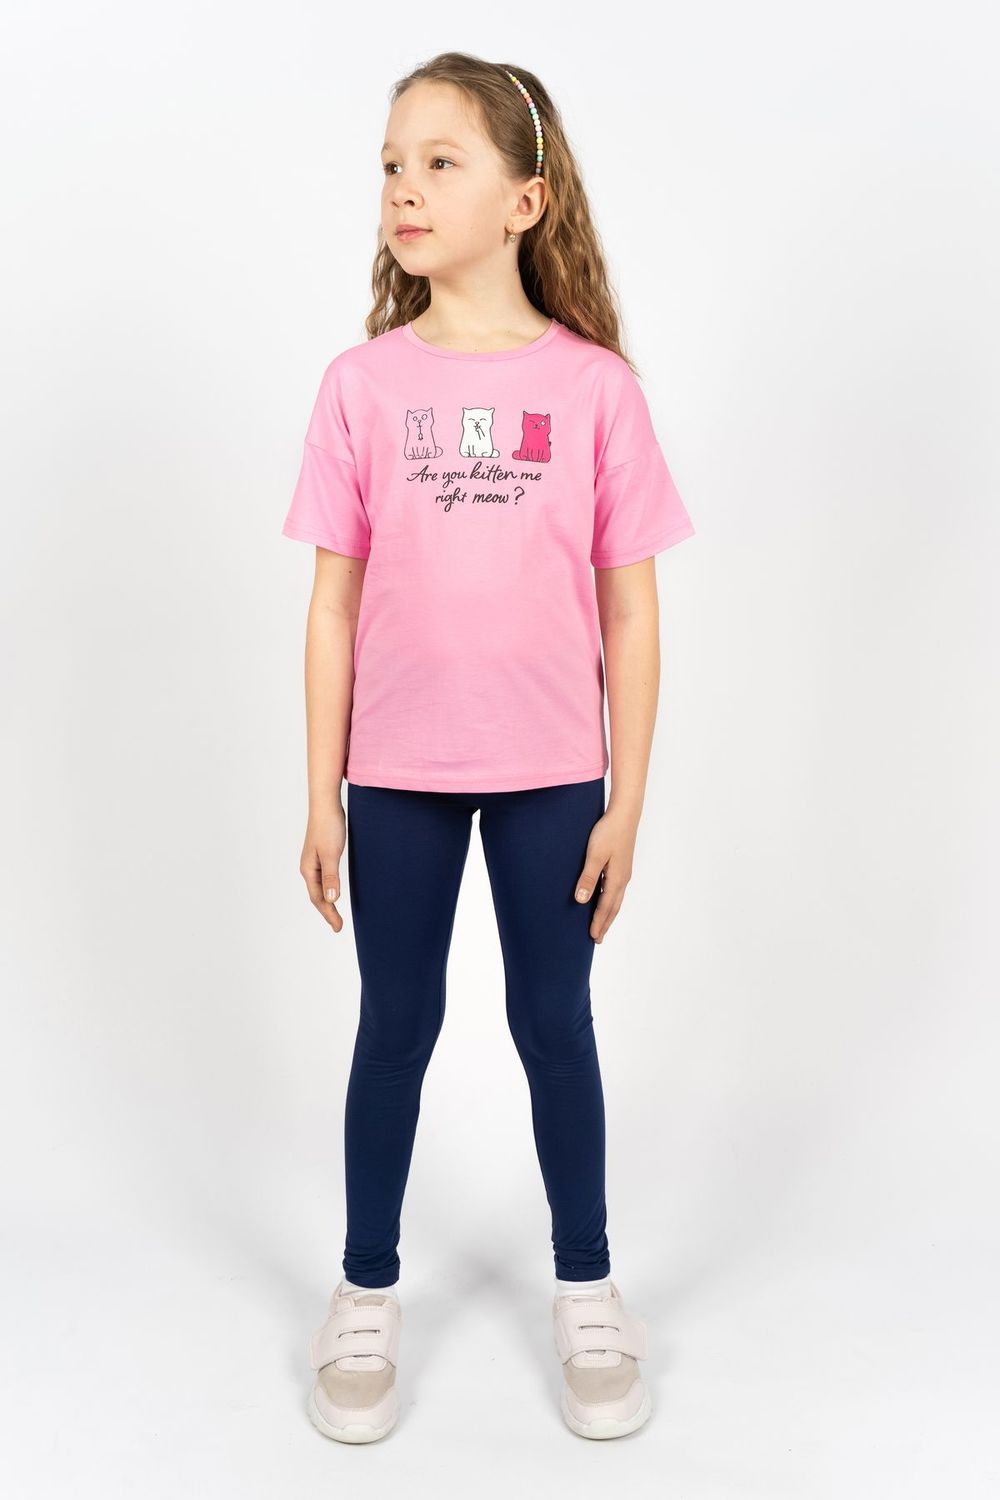 Комплект для девочки 41103 (футболка+лосины) - с.розовый/синий